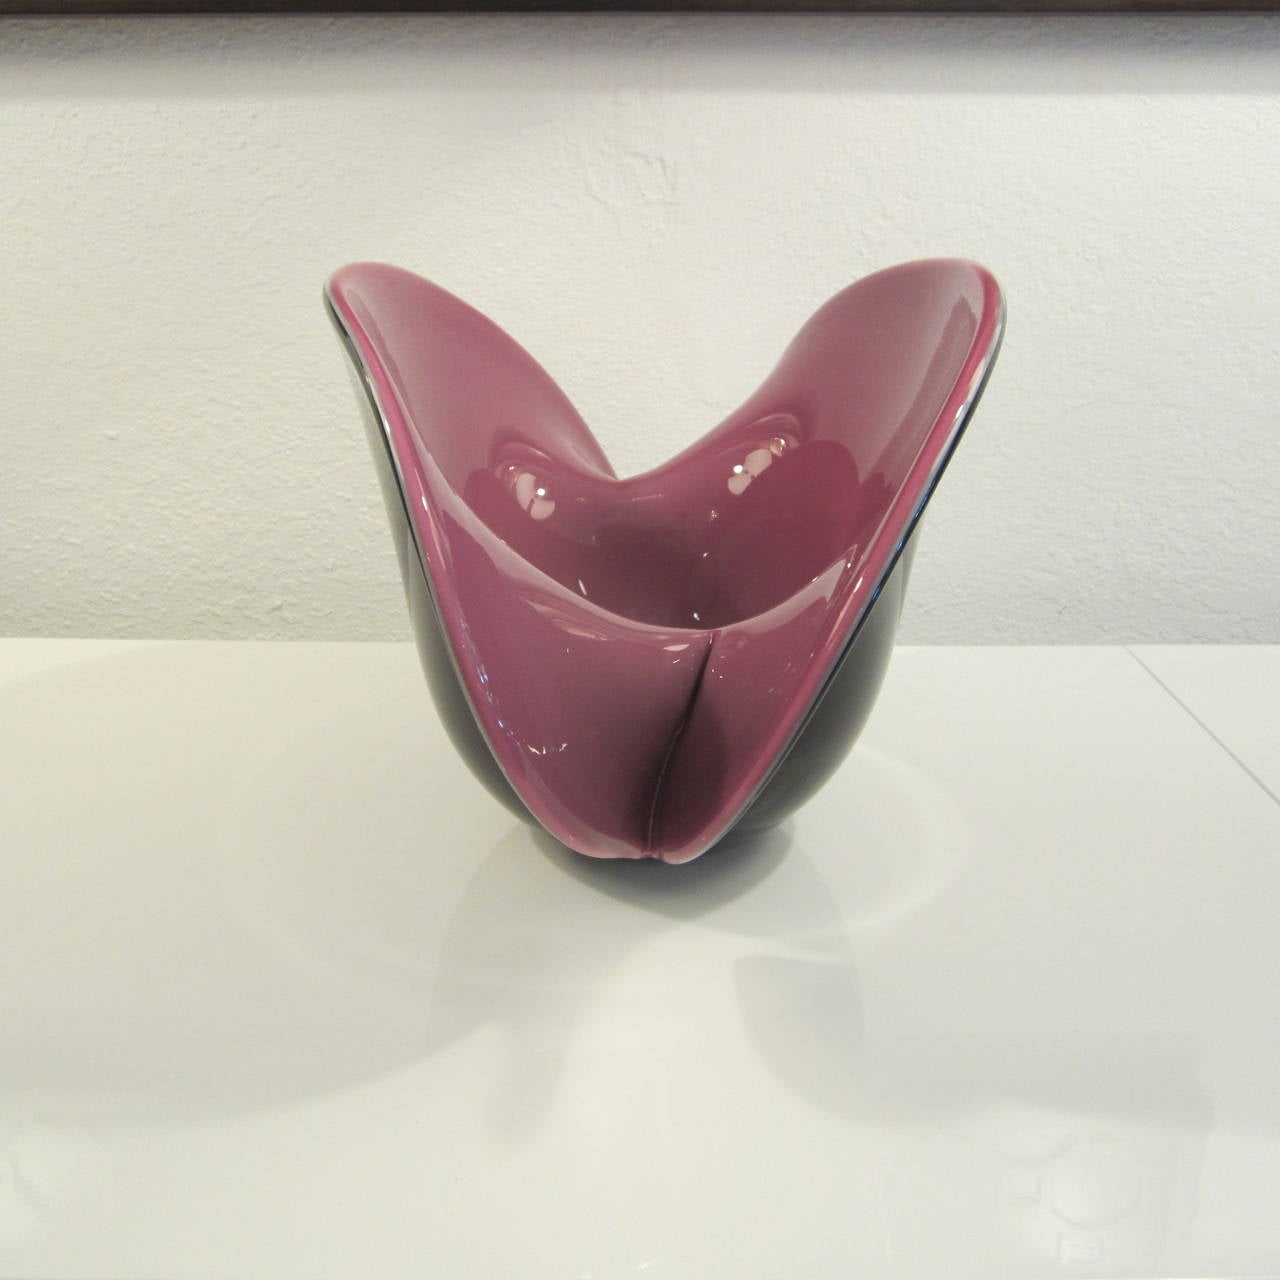 Formia Vetri Di Murano Large Handblown Glass Centerpiece Shell Bowl For Sale 1